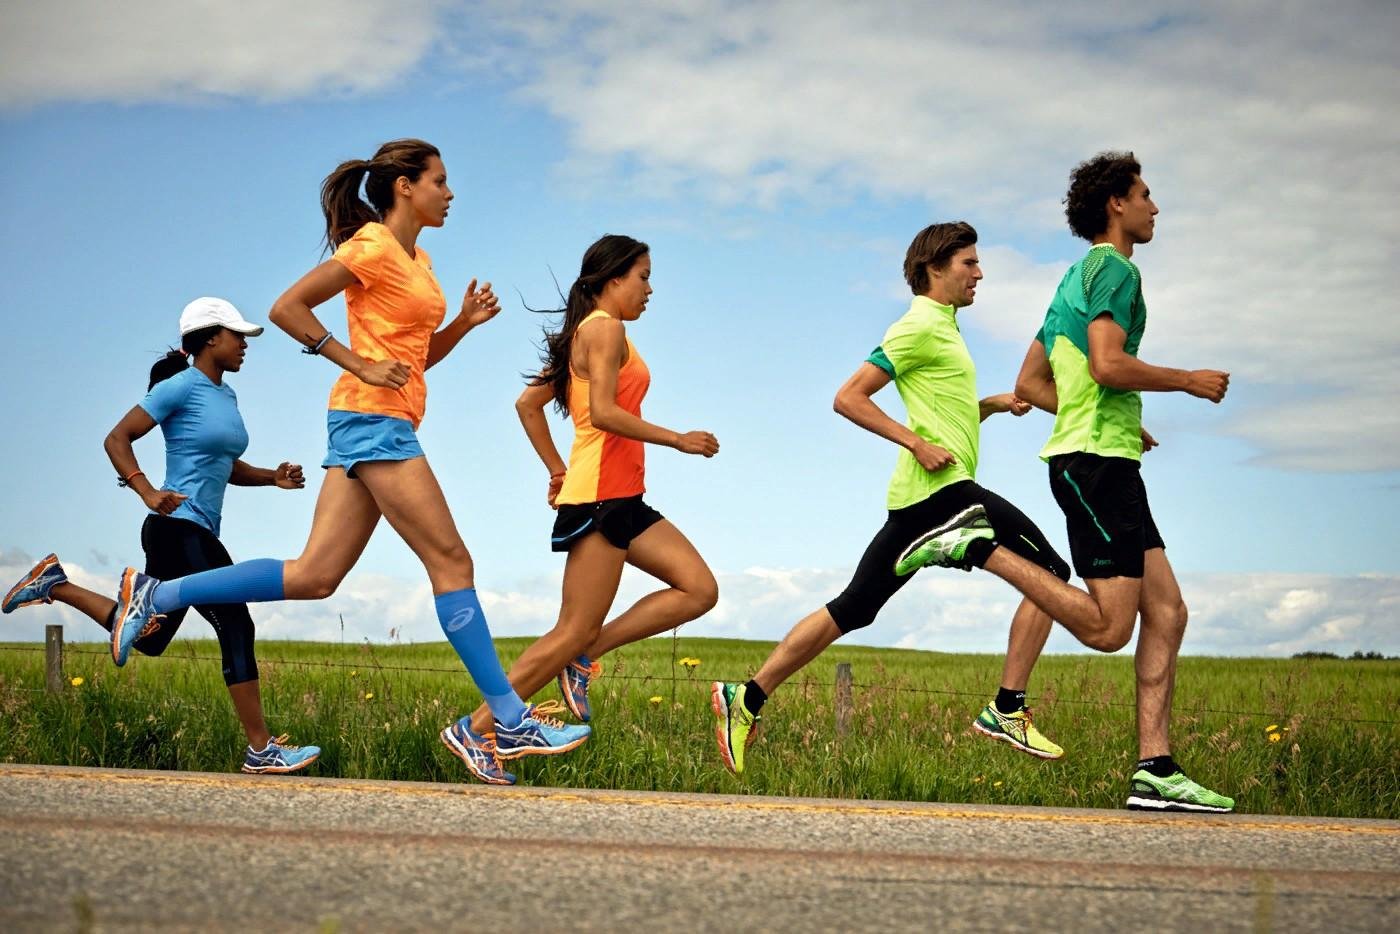 Делать забеги. Спорт бег. Спортивные люди. Бегущий человек. Занятие физкультурой и спортом.